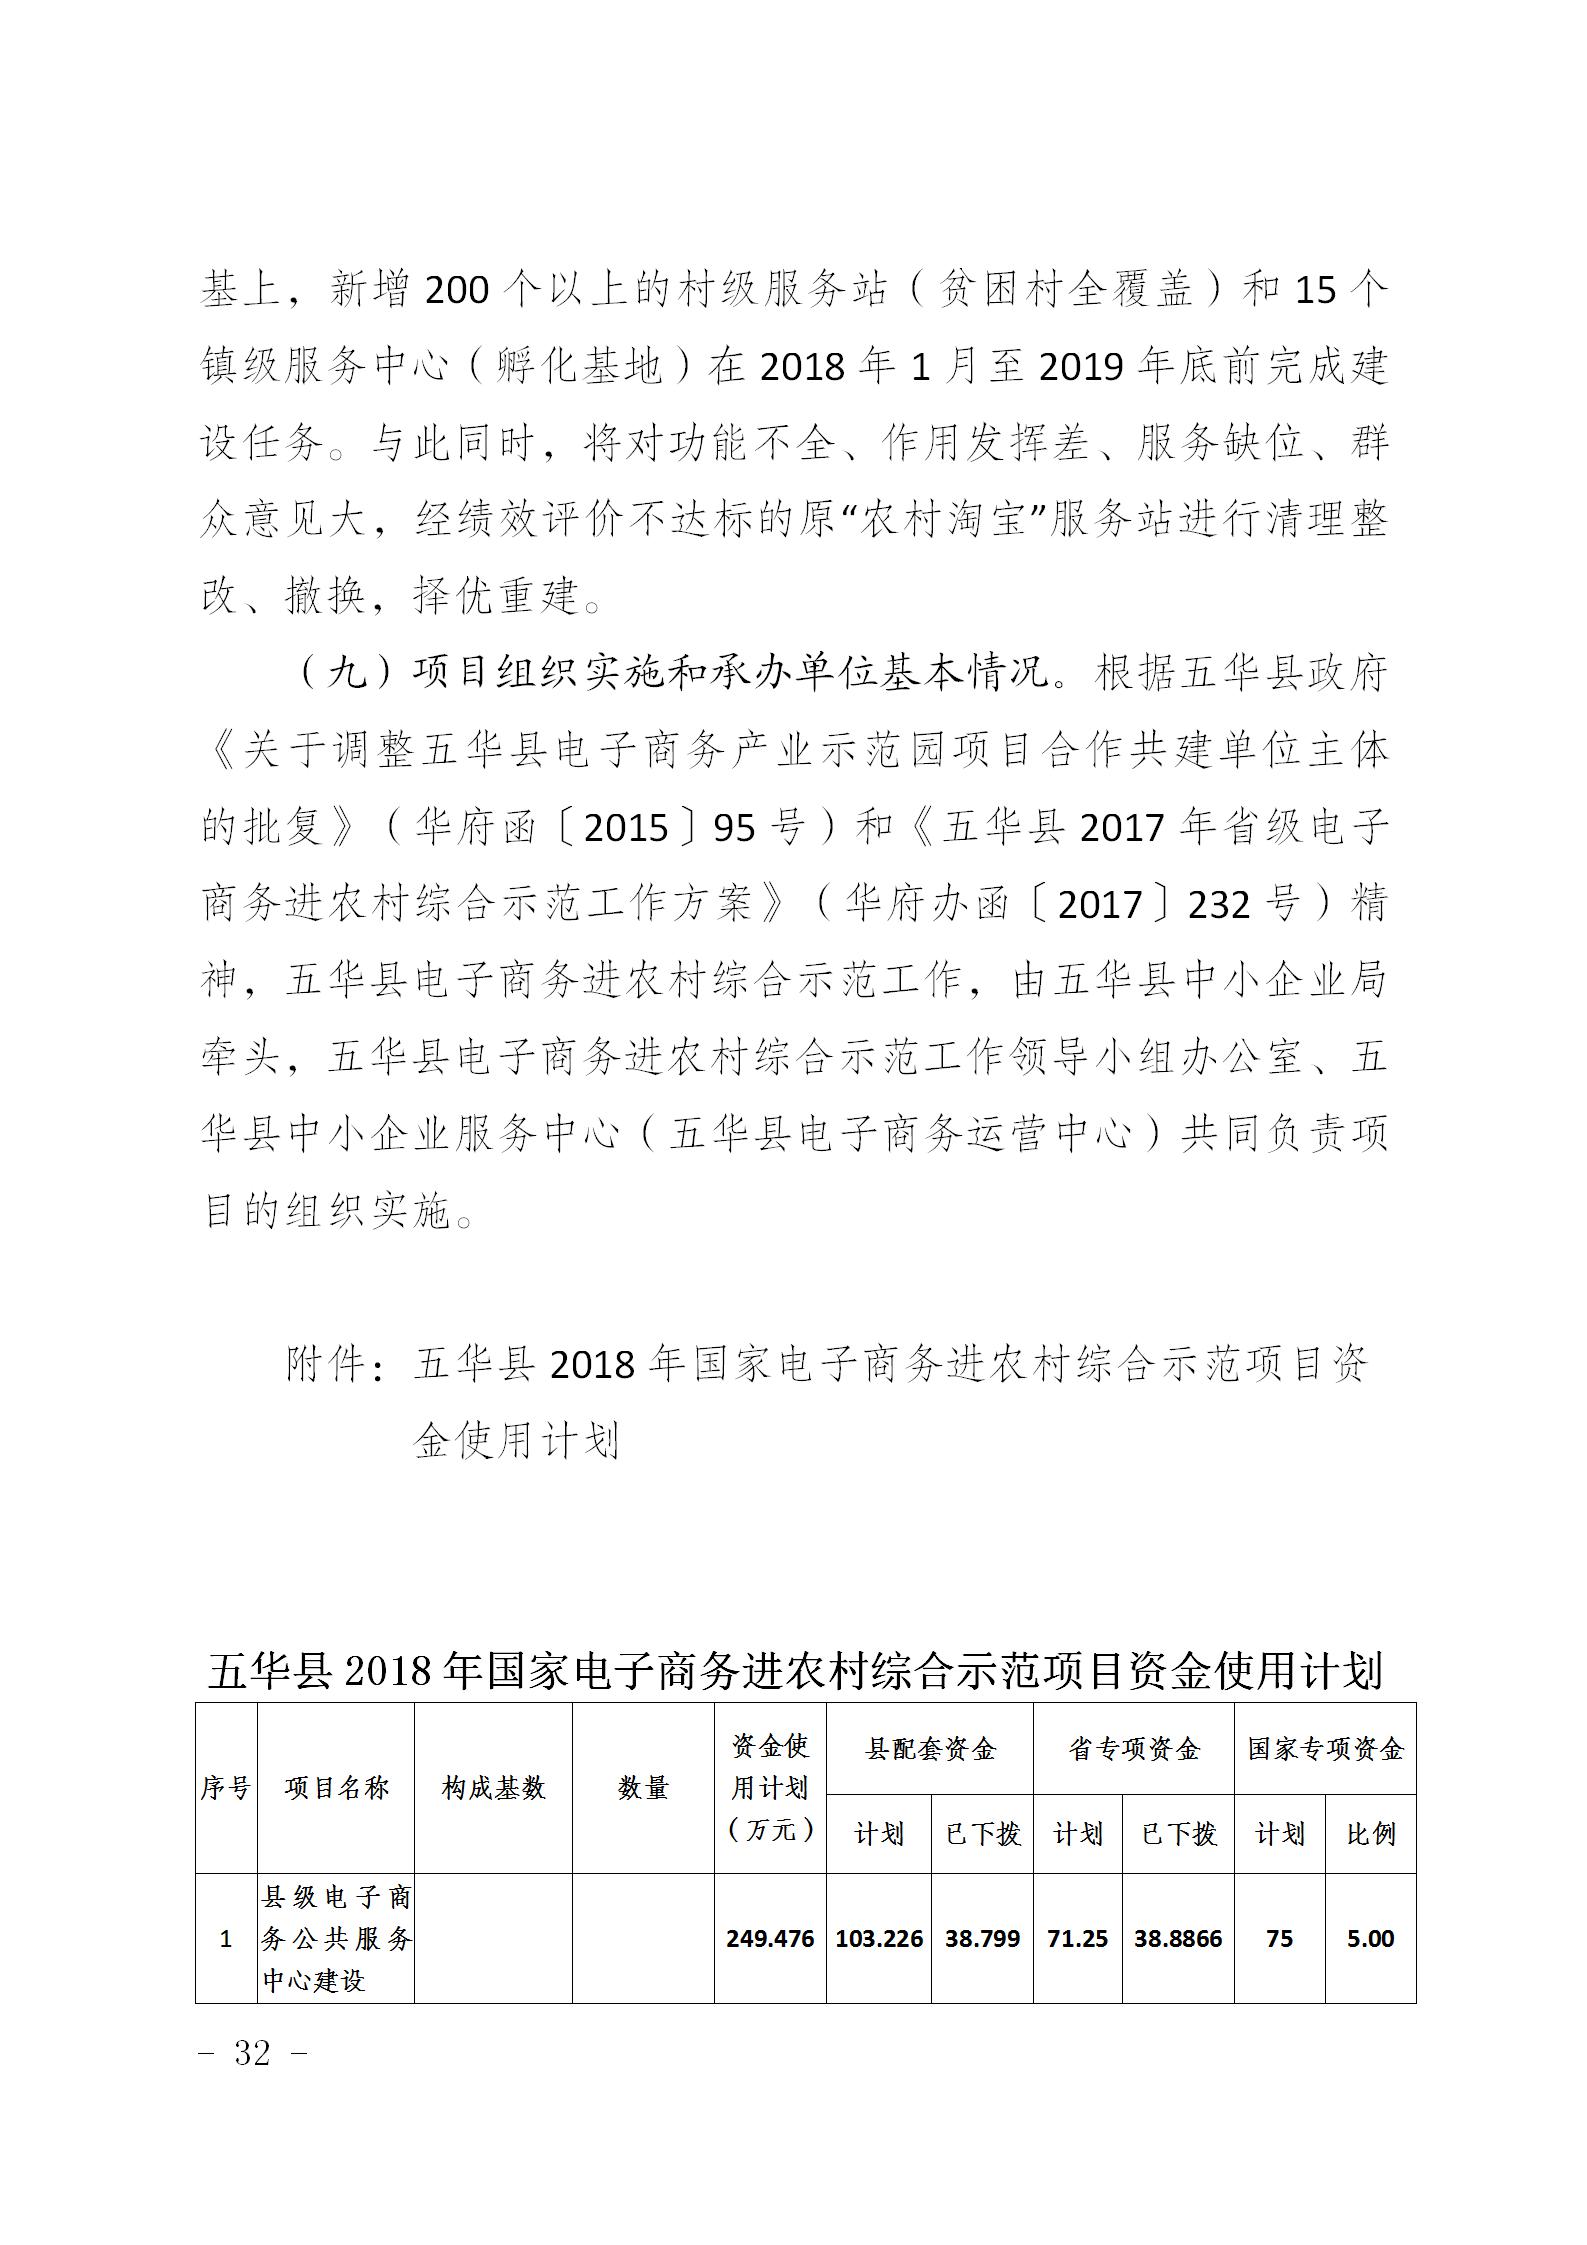 3、《五华县2018年国家级电子商务进农村综合示范县总体实施方案》（送审稿）_32.jpg